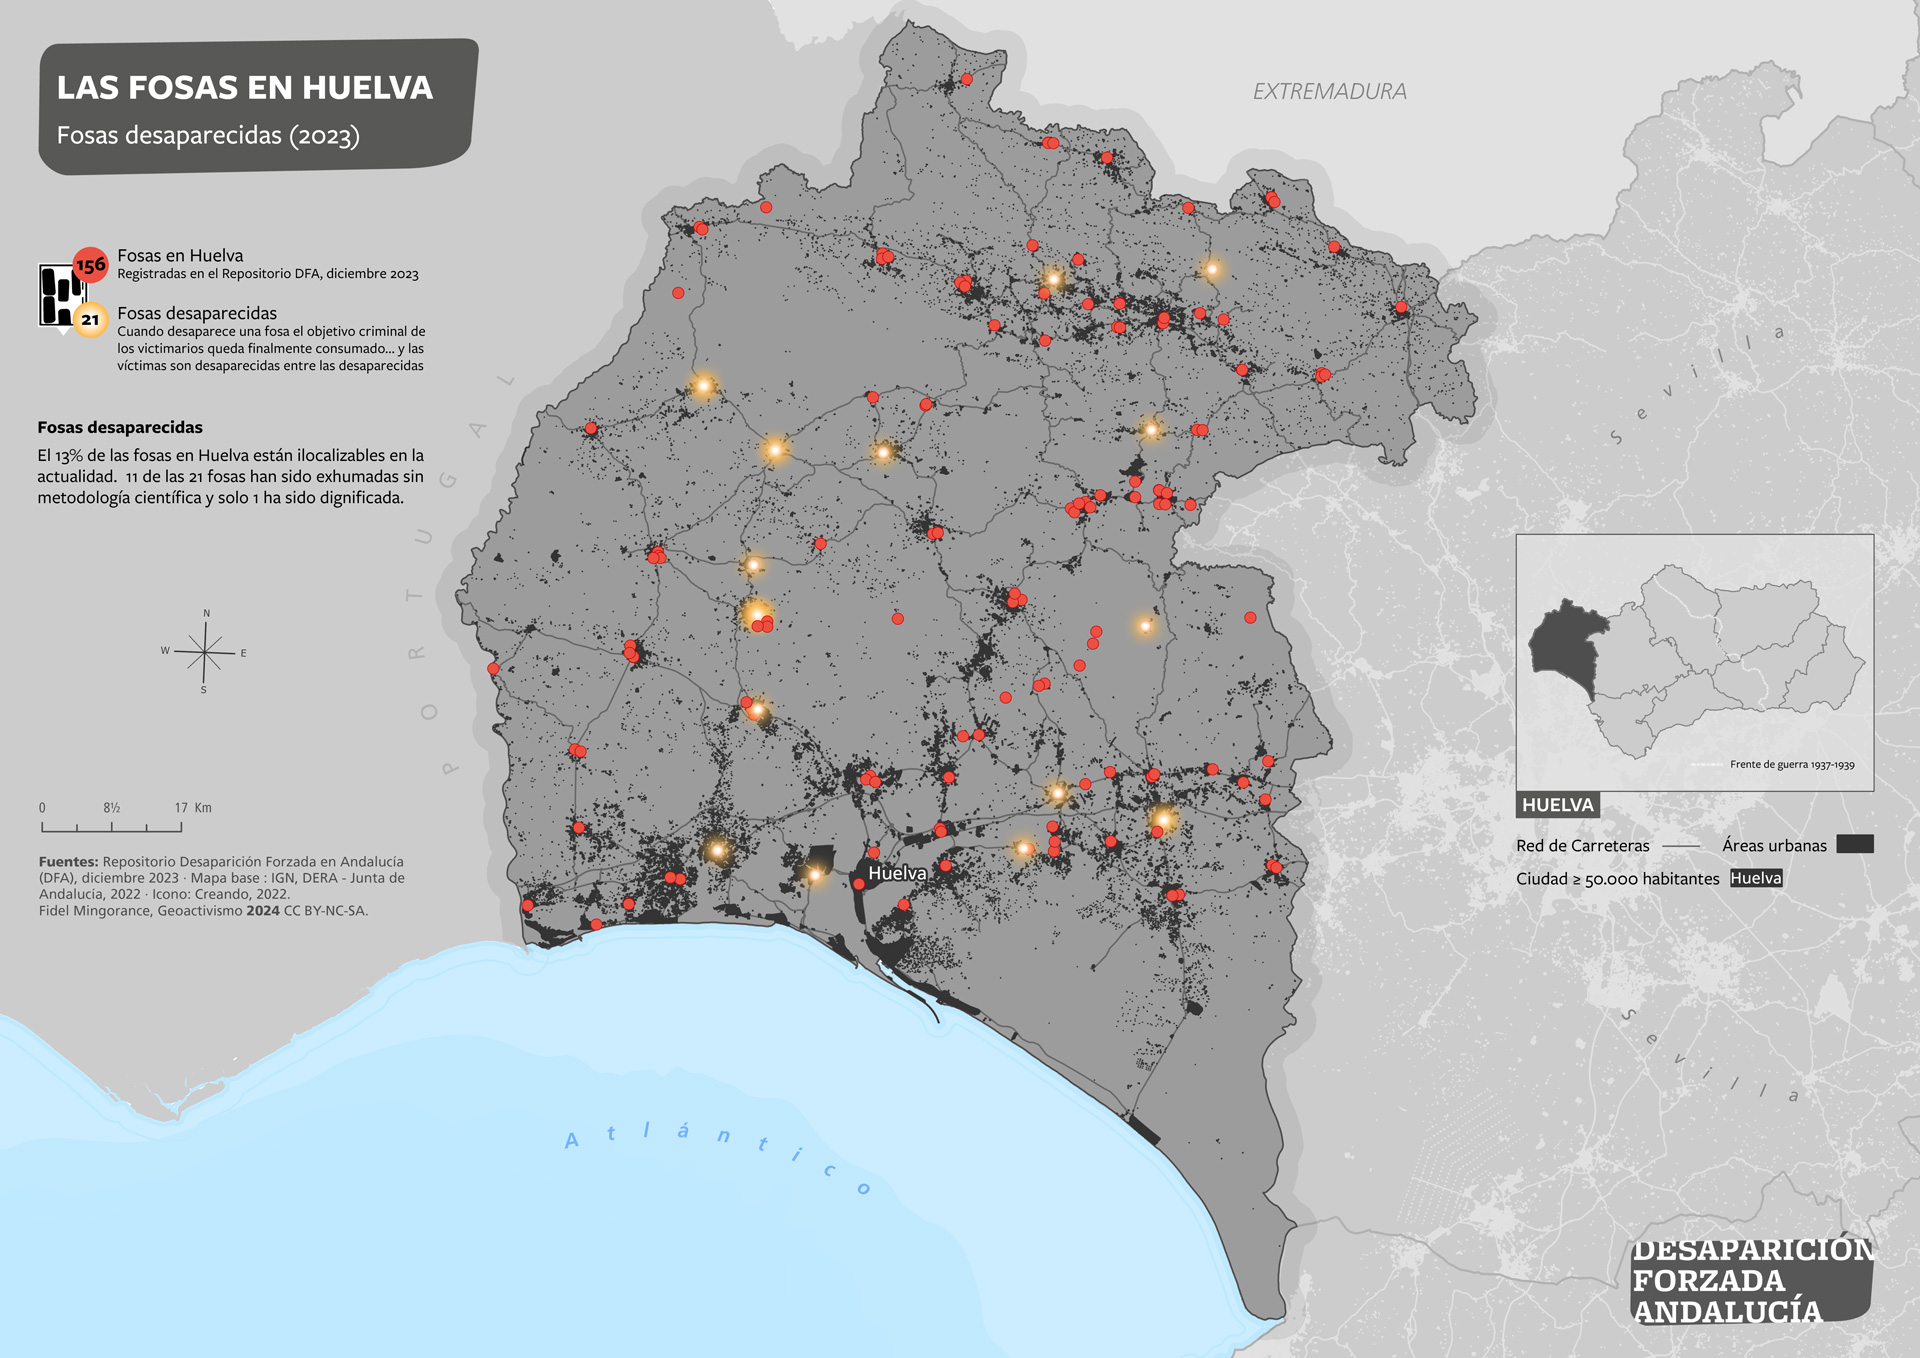 Las fosas en Huelva. Fosas desaparecidas (2023)